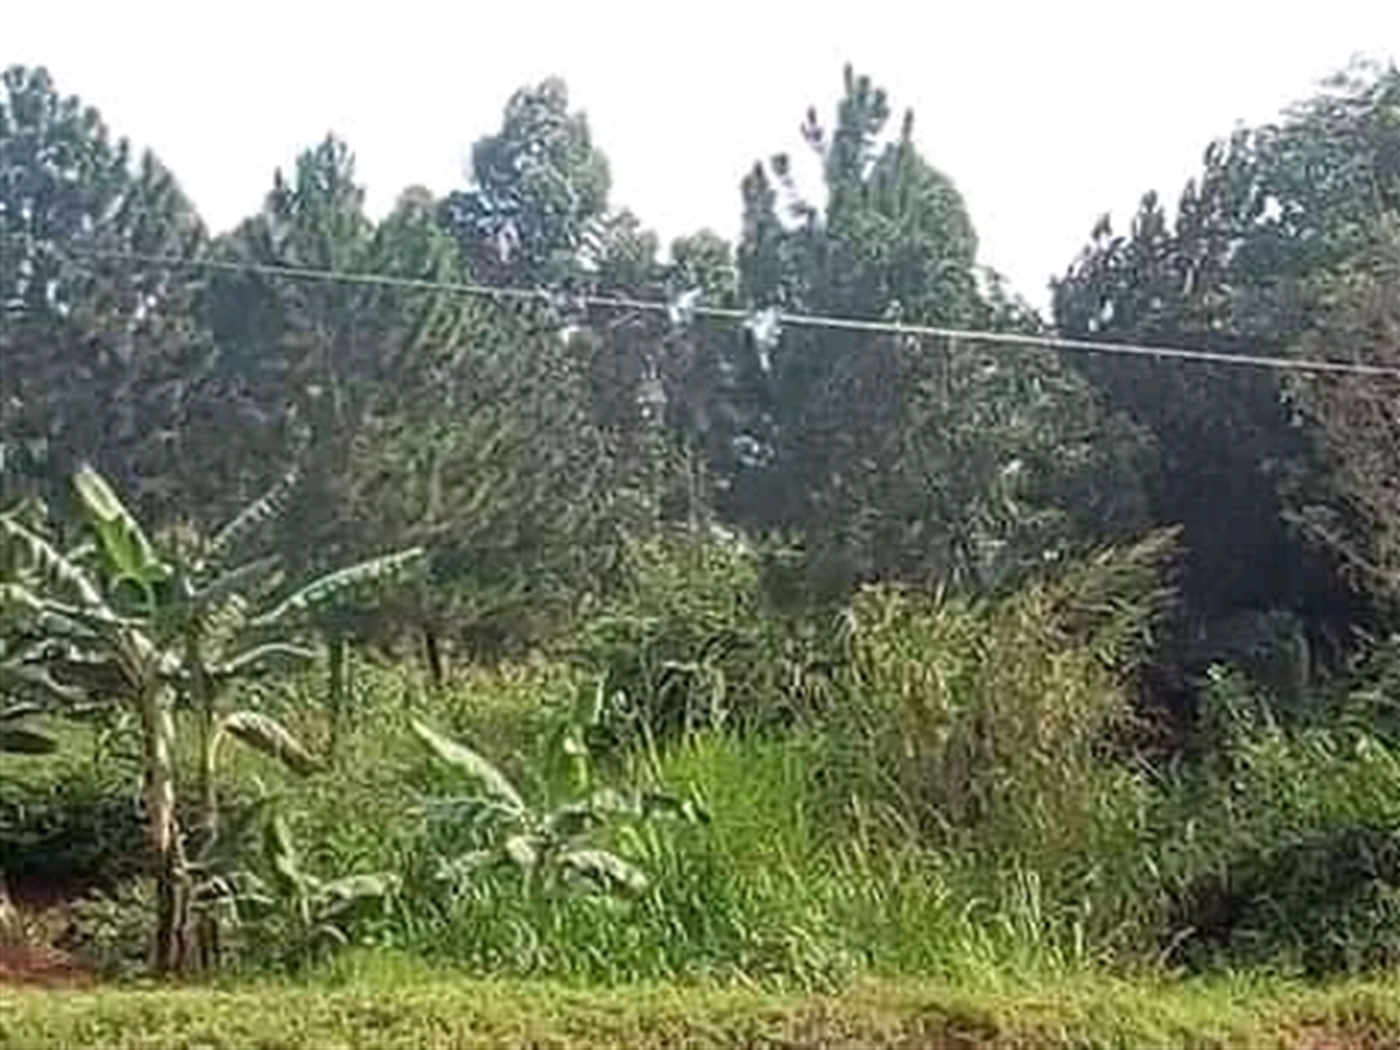 Multipurpose Land for sale in Kiganda Mityana